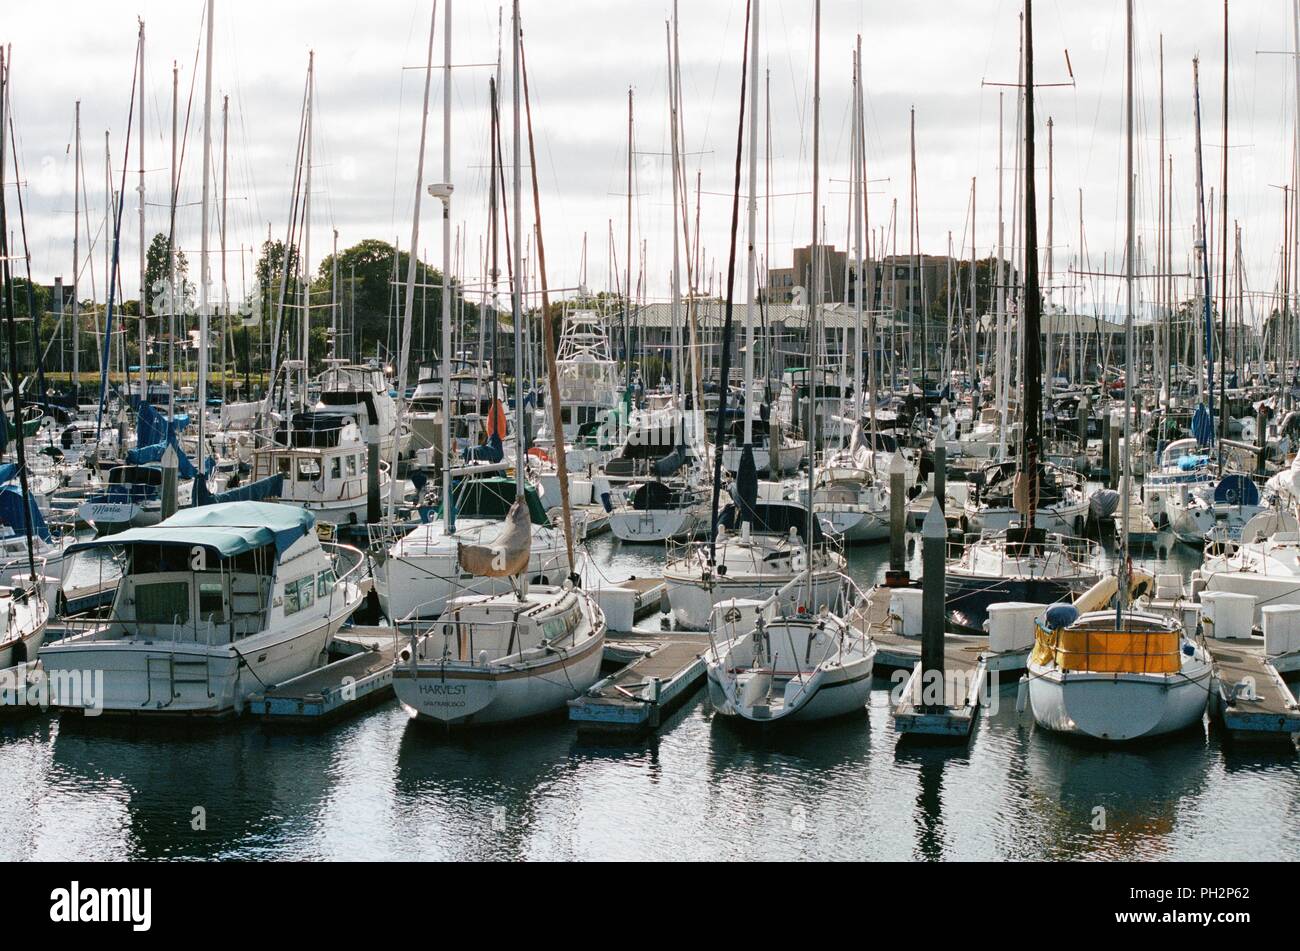 Segelboote und Motorboote sind in Alameda Marina sichtbar, mit nahe gelegenen Häuser und Geschäfte im Hintergrund sichtbar, Alameda Island, Alameda, Kalifornien, 14. Mai 2018. () Stockfoto